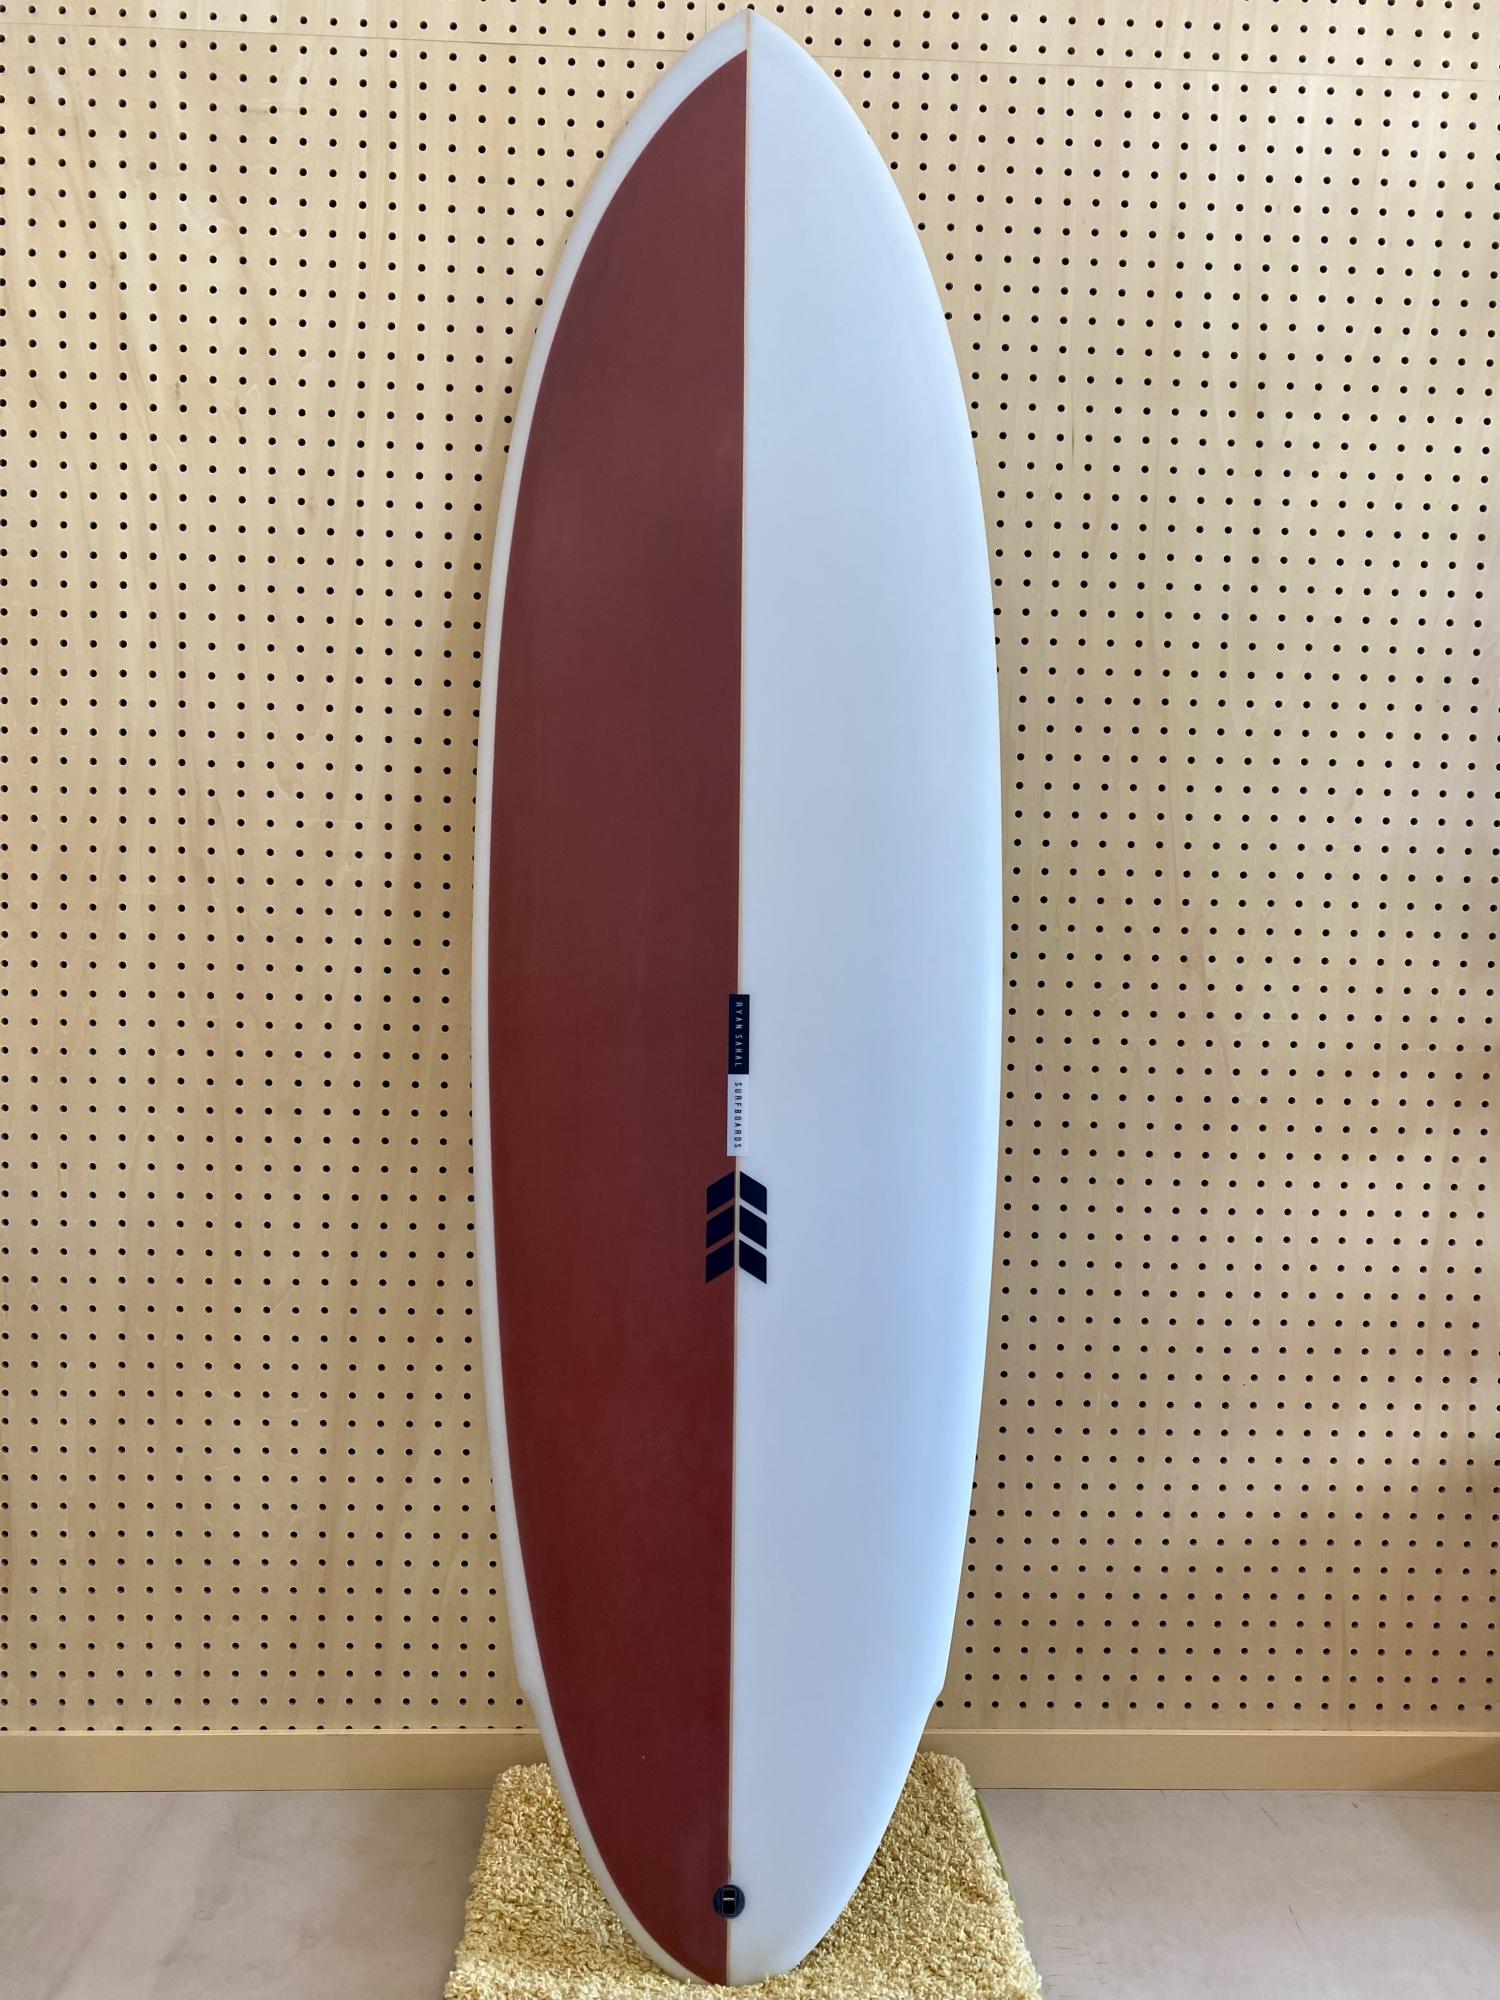 The SABRE 6.2 RYAN SAKAL SURFBOARDS